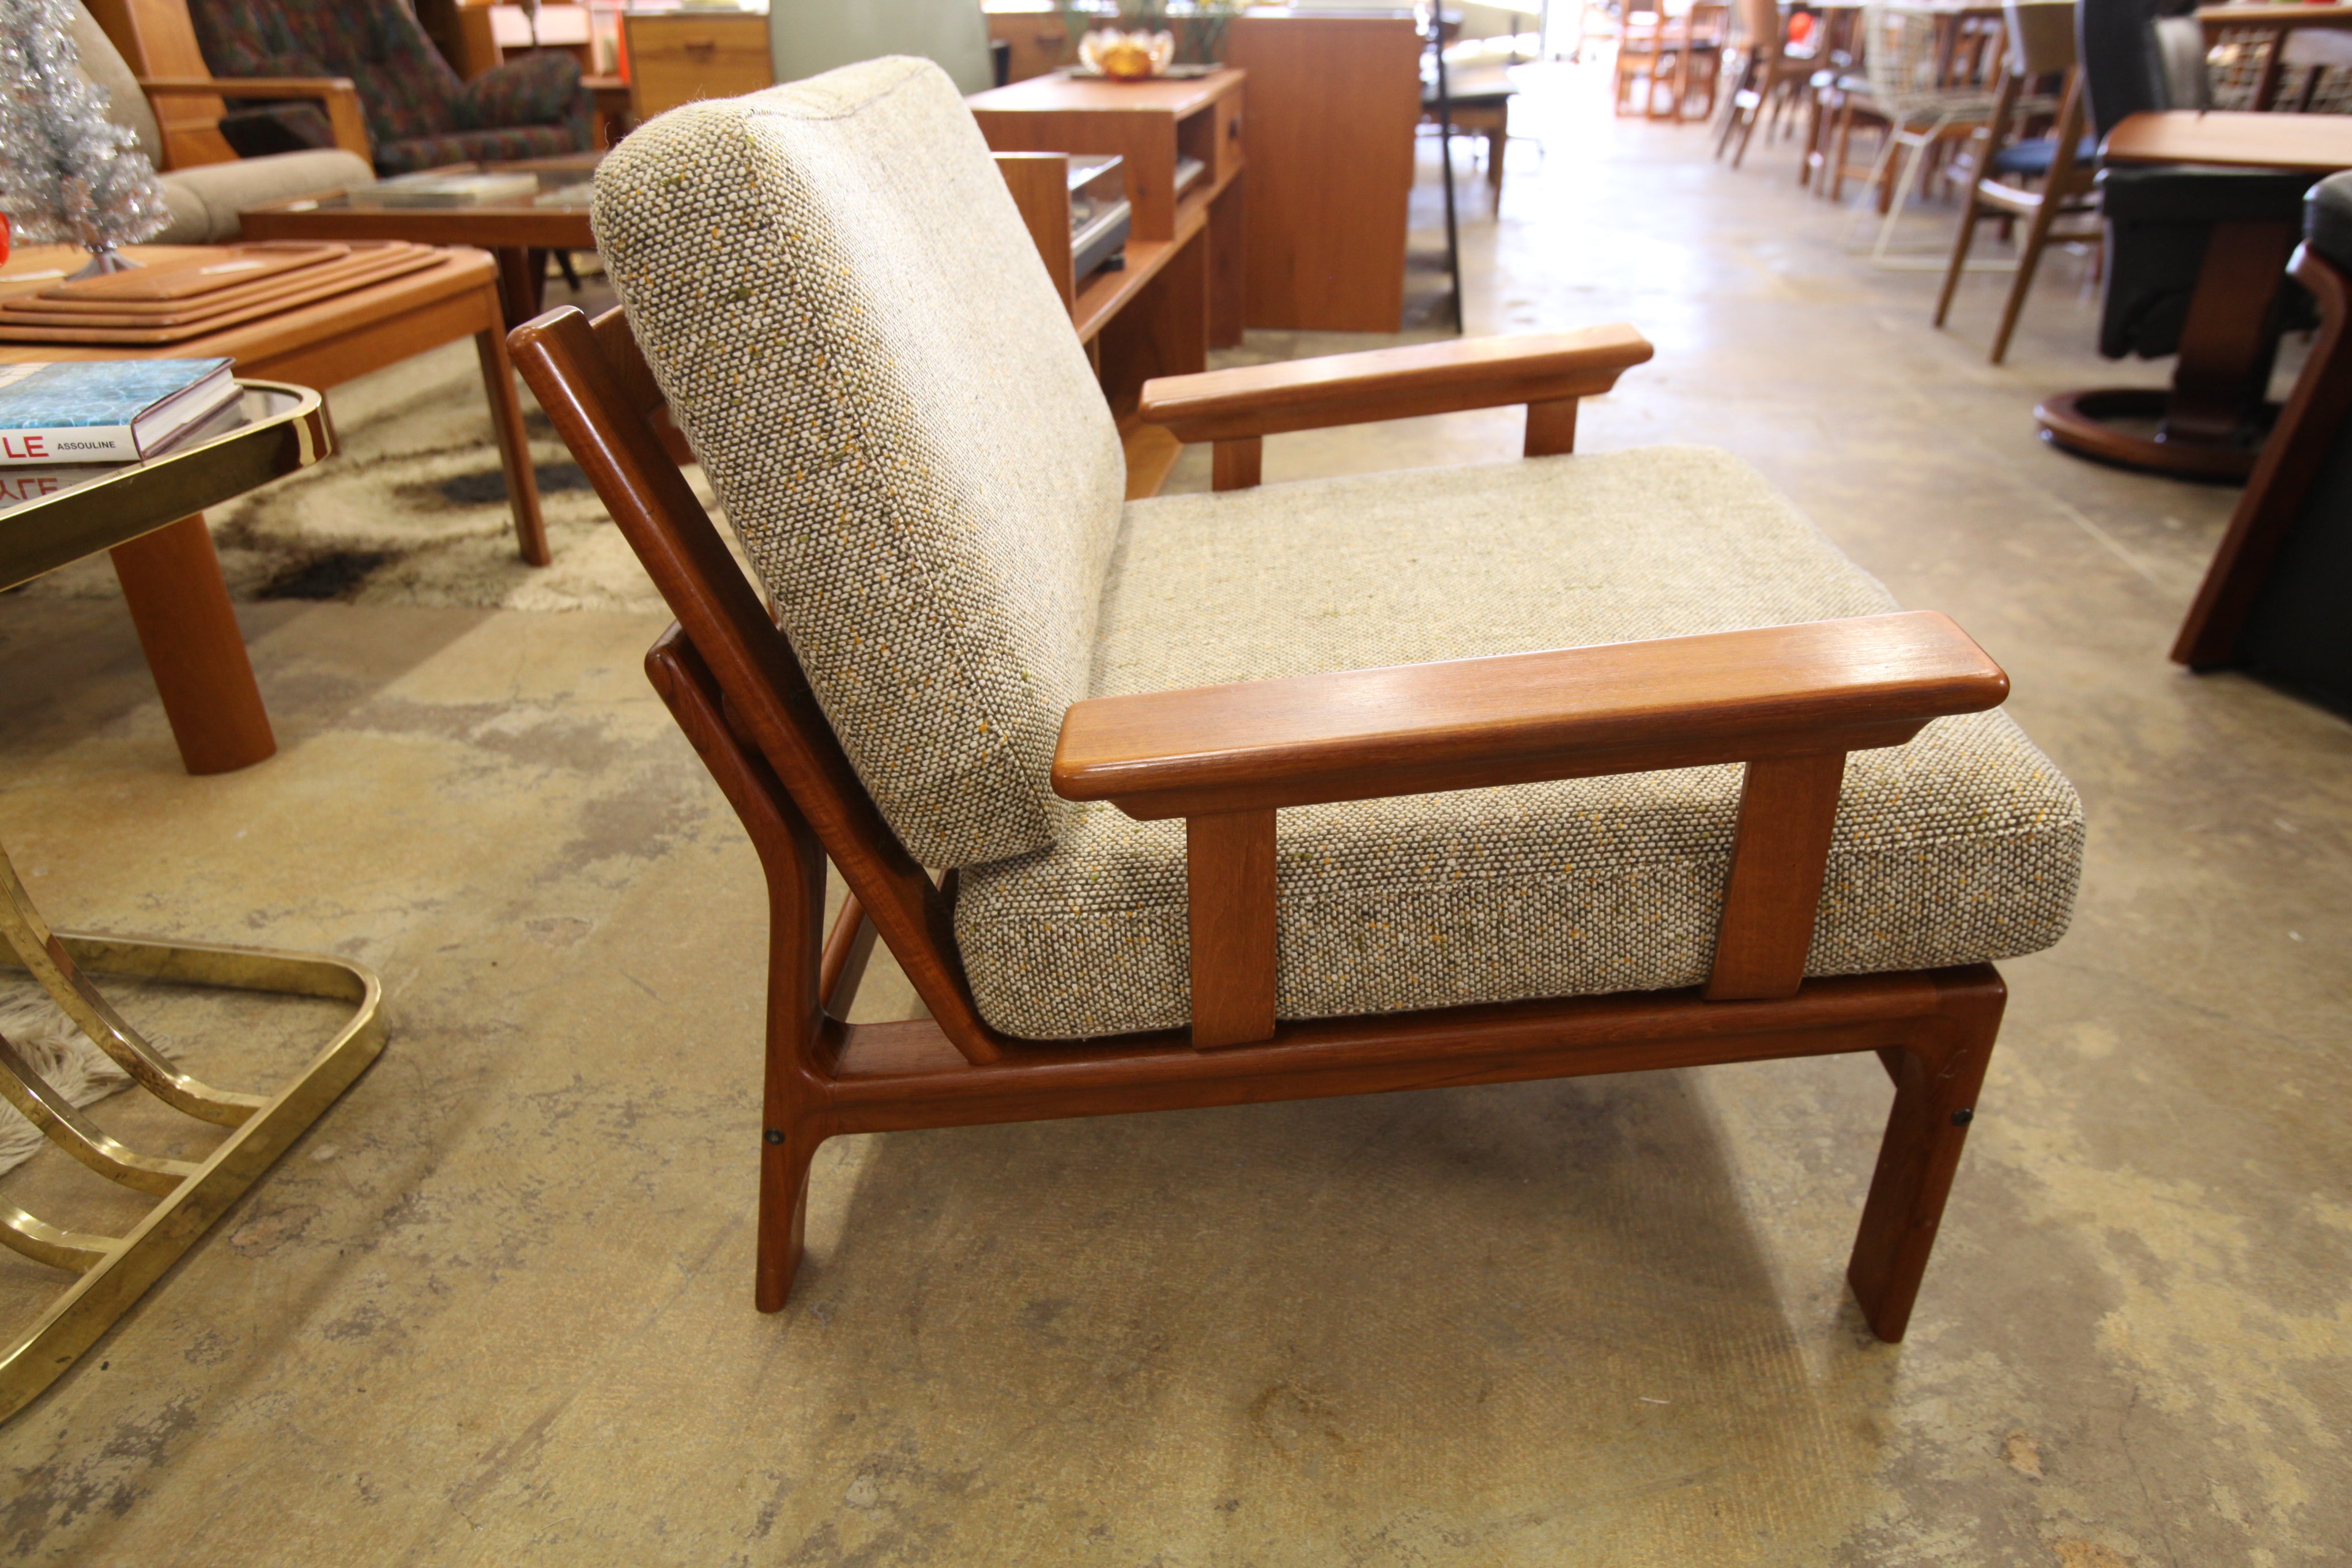 Unique Vintage Danish Teak Low & Wide Lounge Chair by Komfort (32"W x 31"D x 28"H)